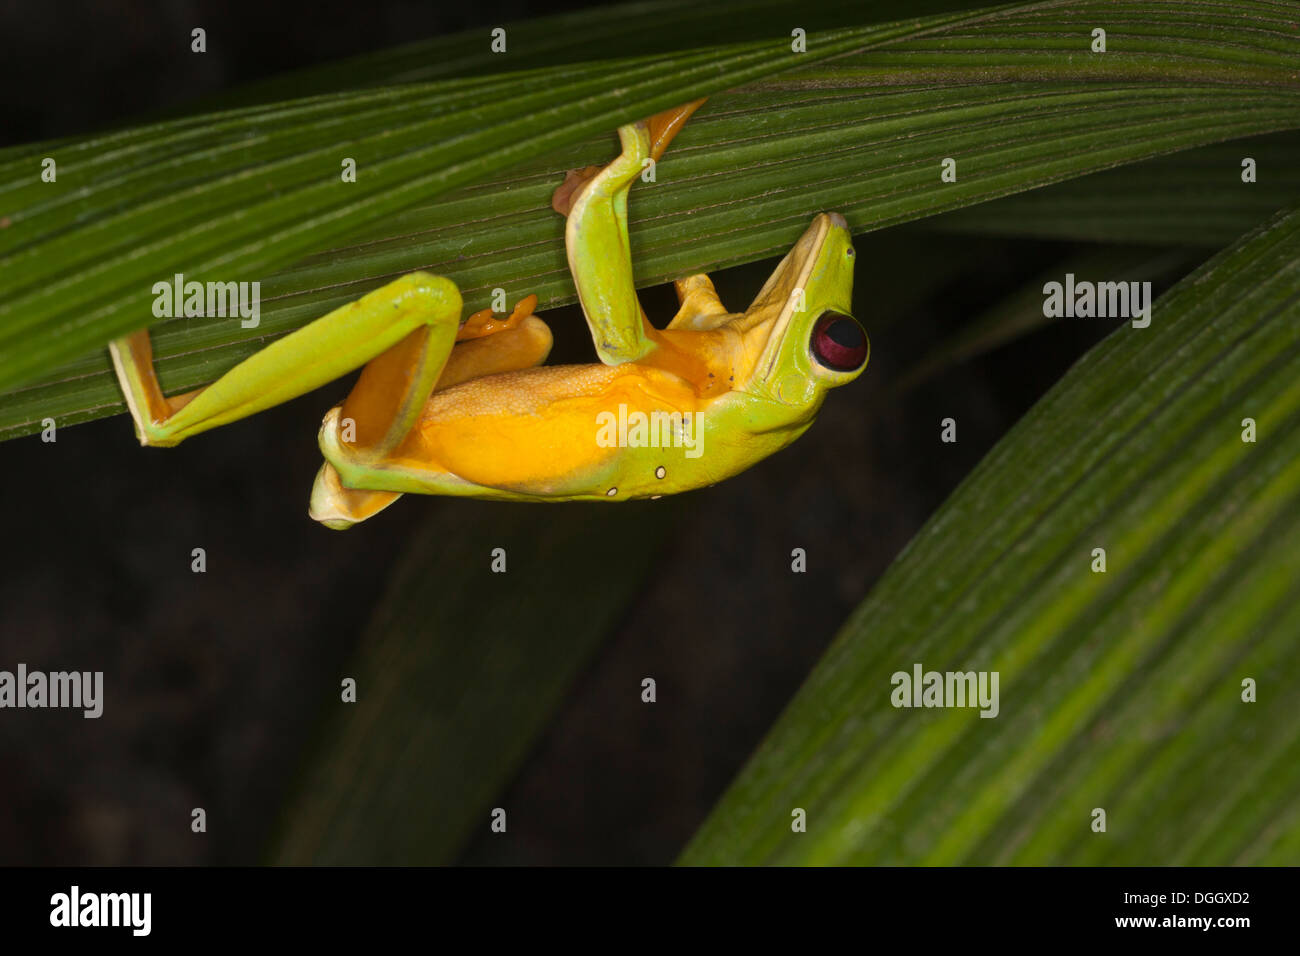 La nuit, la grenouille qui glisse (Agalychnis sparrelli) marche sur le dessous de la feuille. Également connu sous le nom de Flying Leaf Frog ou de Spurrell's Leaf Frog Banque D'Images